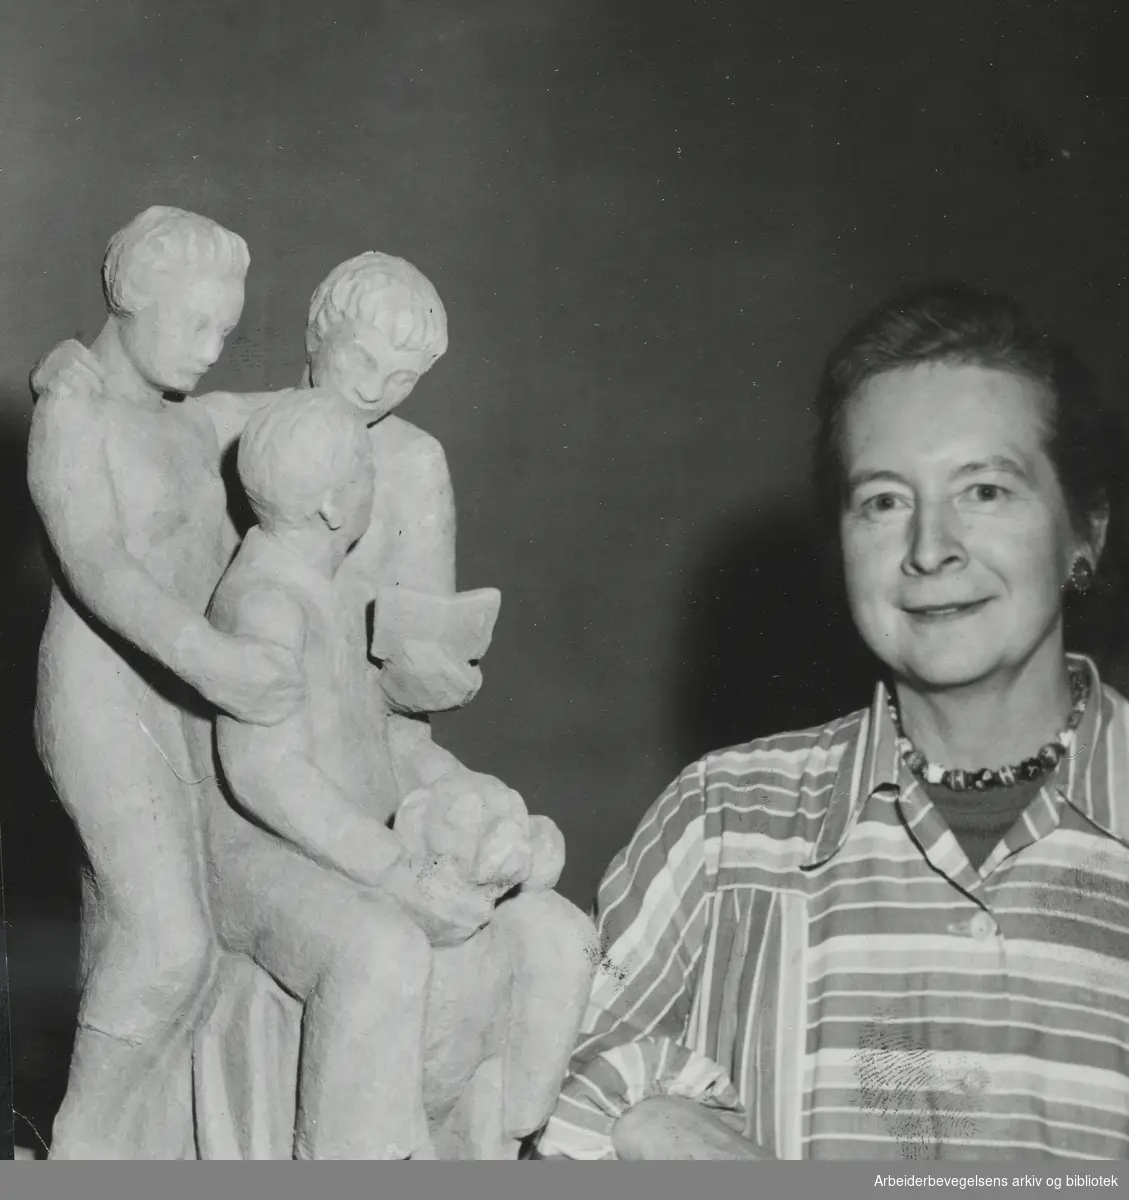 Billedhuggeren Maja Refsum, egentlig Thea Marie Refsum (1897 - 1986) med skulpturgruppen "Min familie" i Kunstnerforbundet, April 1954. Arbeidermagasinet/Magasinet for Alle